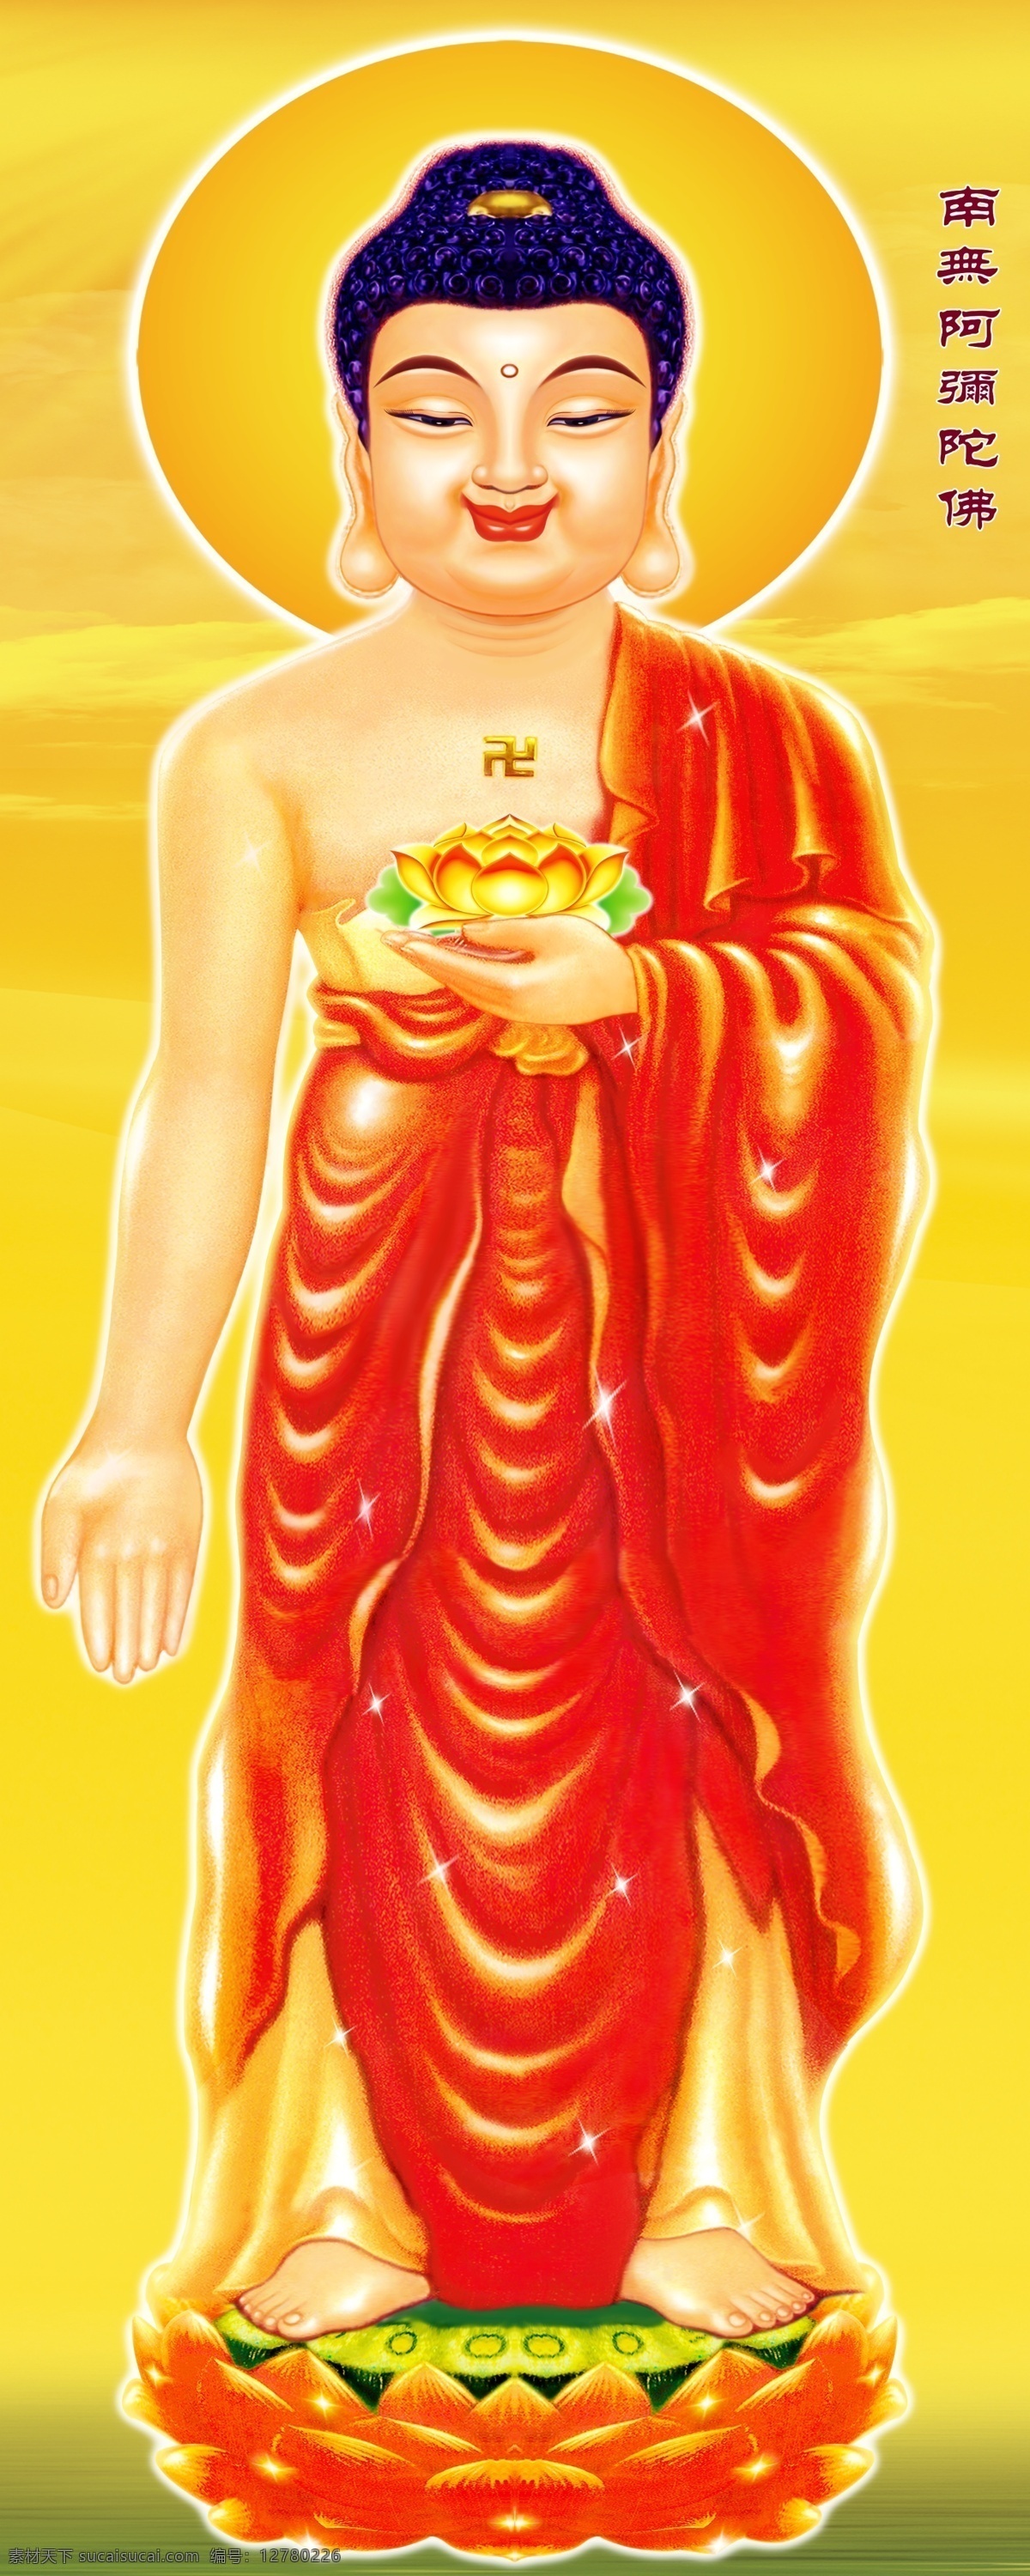 阿弥陀佛 佛教 西方三圣 金黄色背景 莲花 佛像